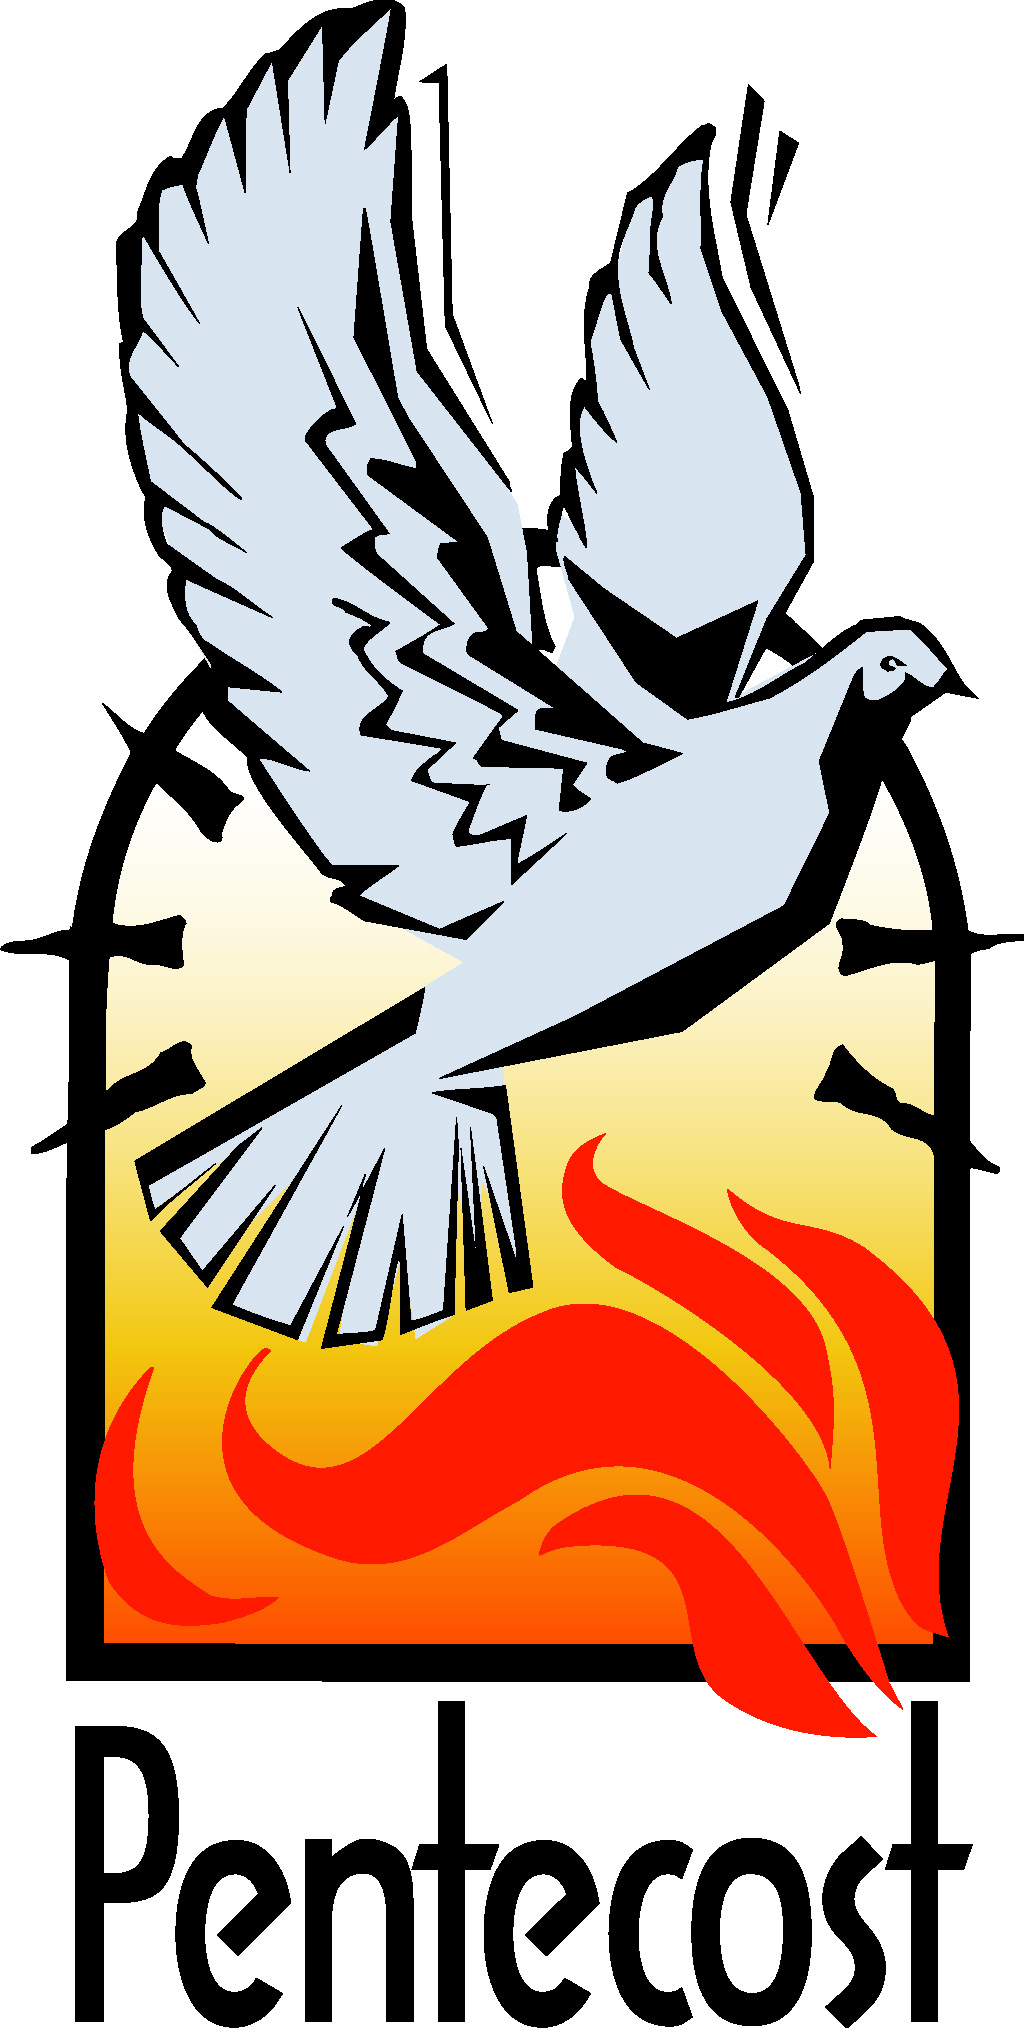 Pentecost Sunday | Holy Spirit, Orthodox Icons and Nardo